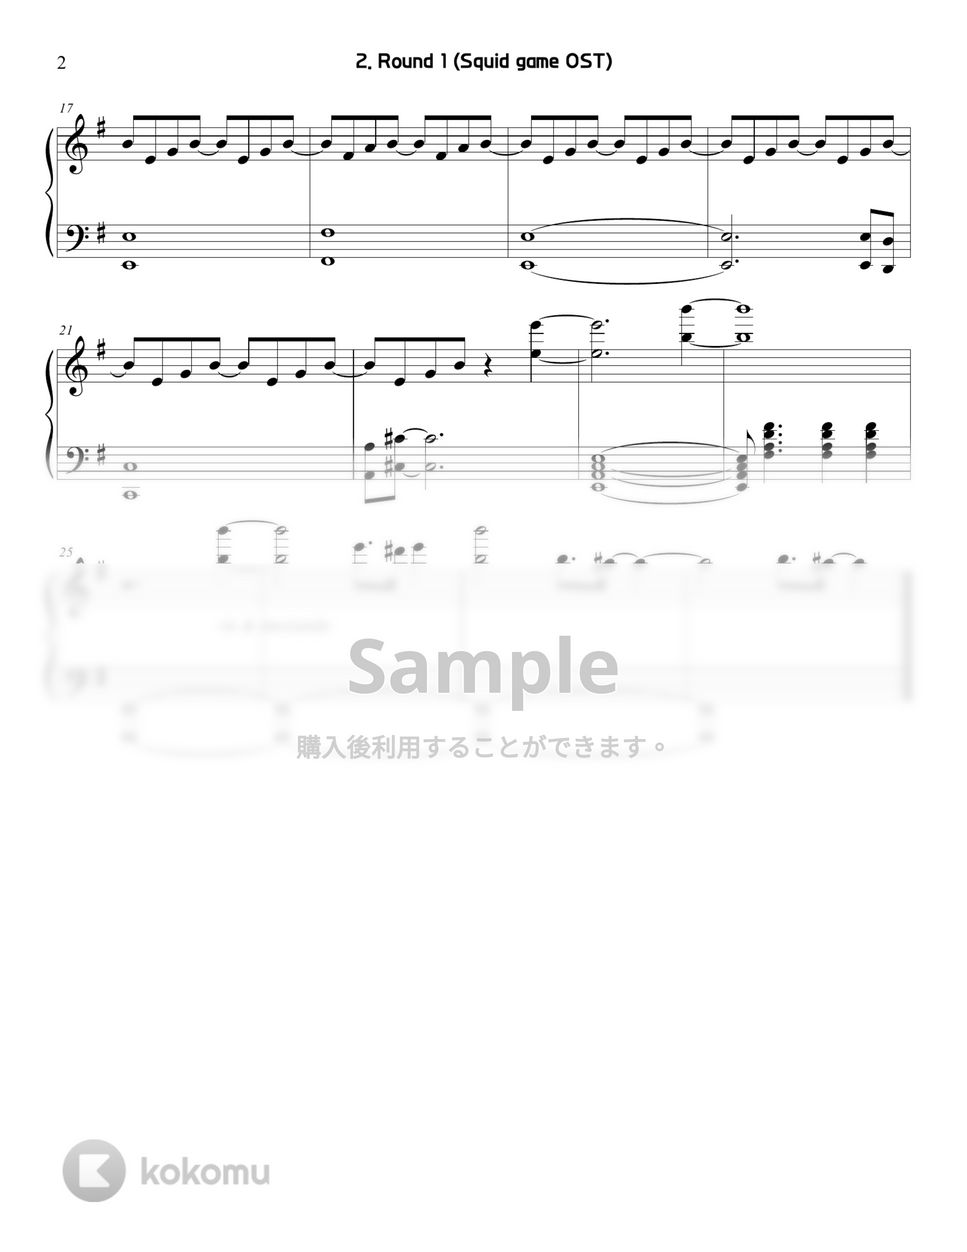 イカゲーム OST / BGM - 2. Round 1 (Series) by Sunny Fingers Piano